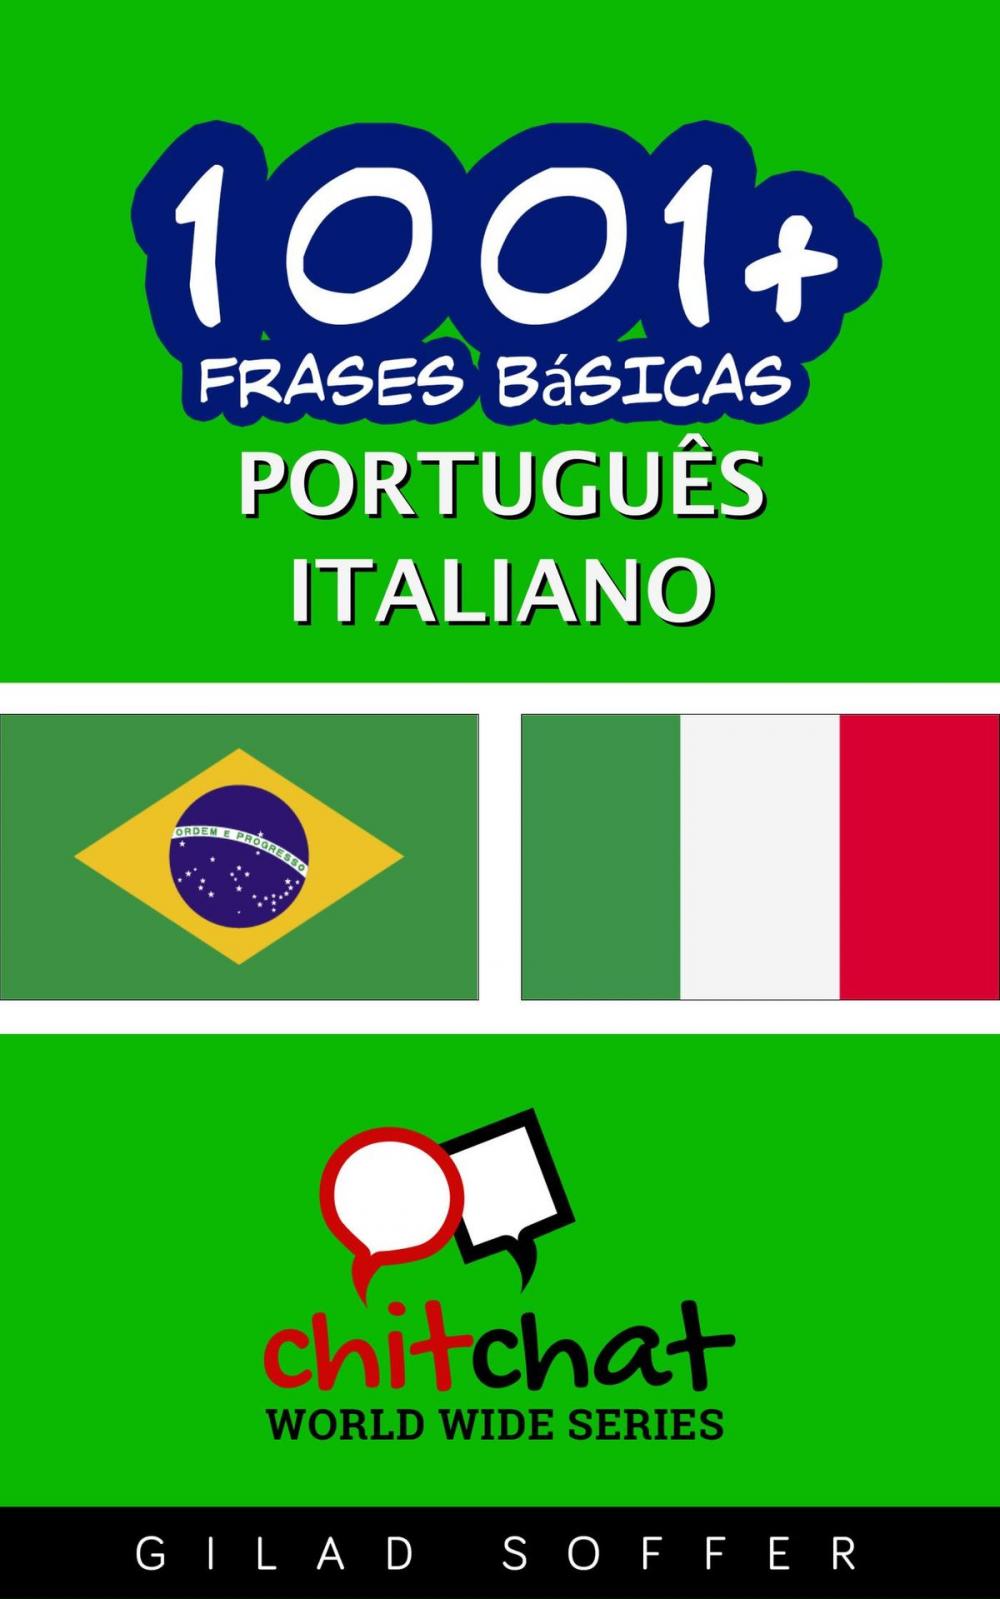 Big bigCover of 1001+ Frases Básicas Português - italiano